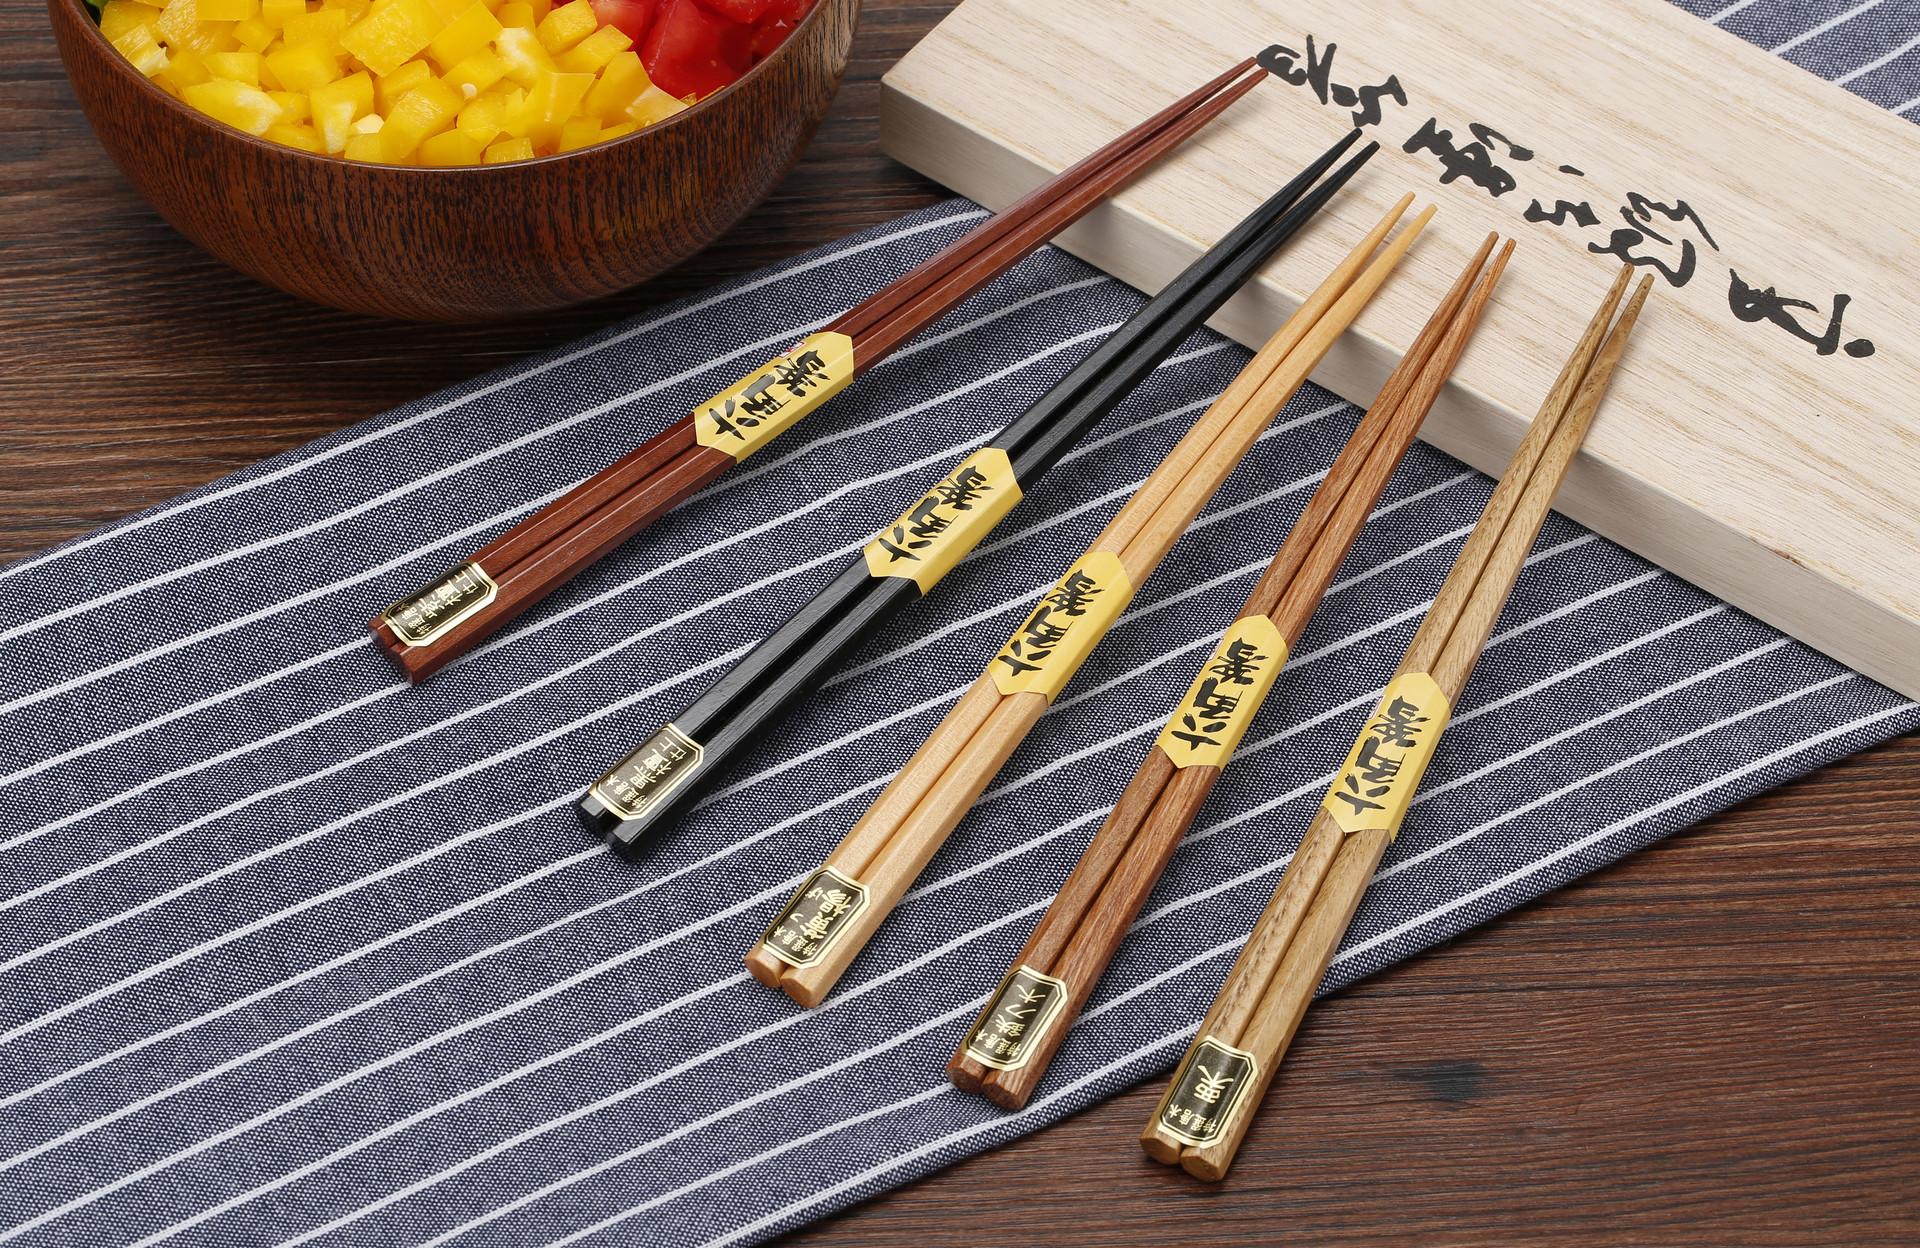 筷子为什么不能插在饭碗上